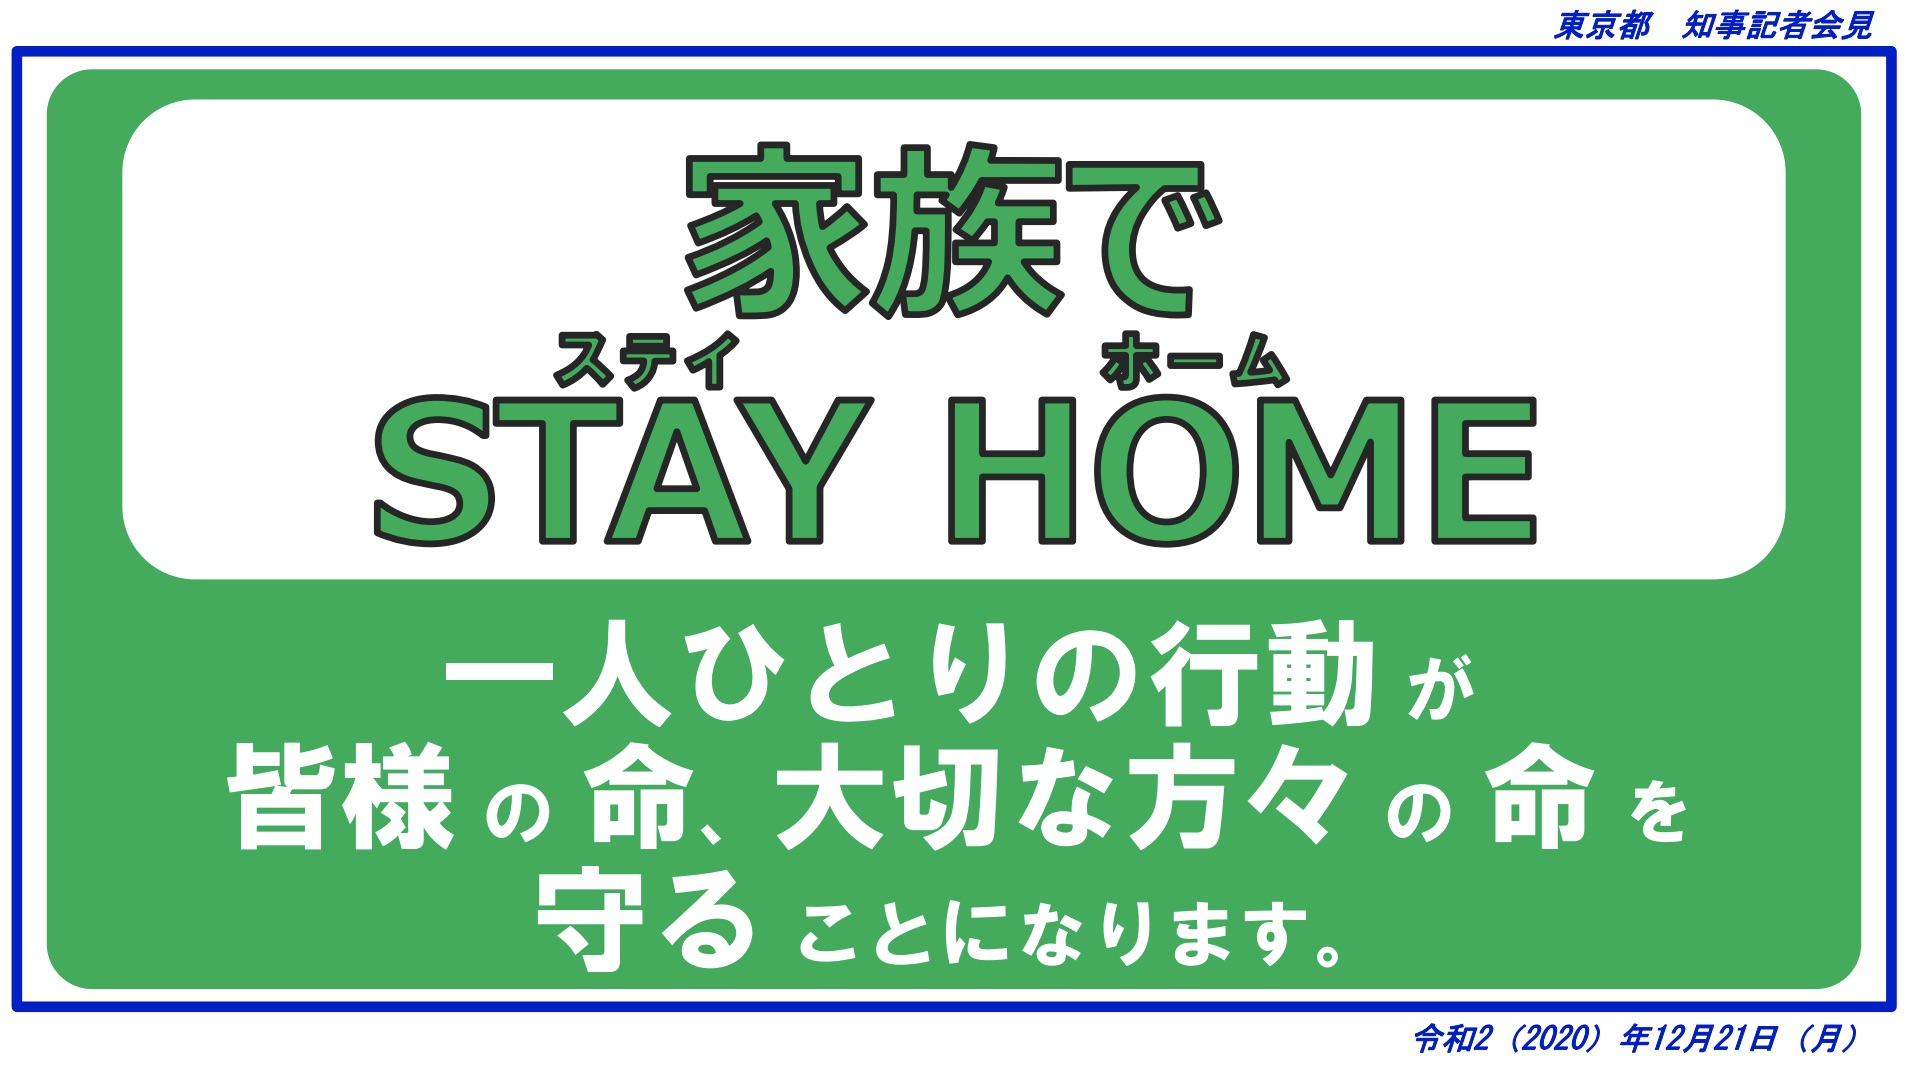 Die "Stay Home"-Aufforderung der Tokioter Metropolregierung.